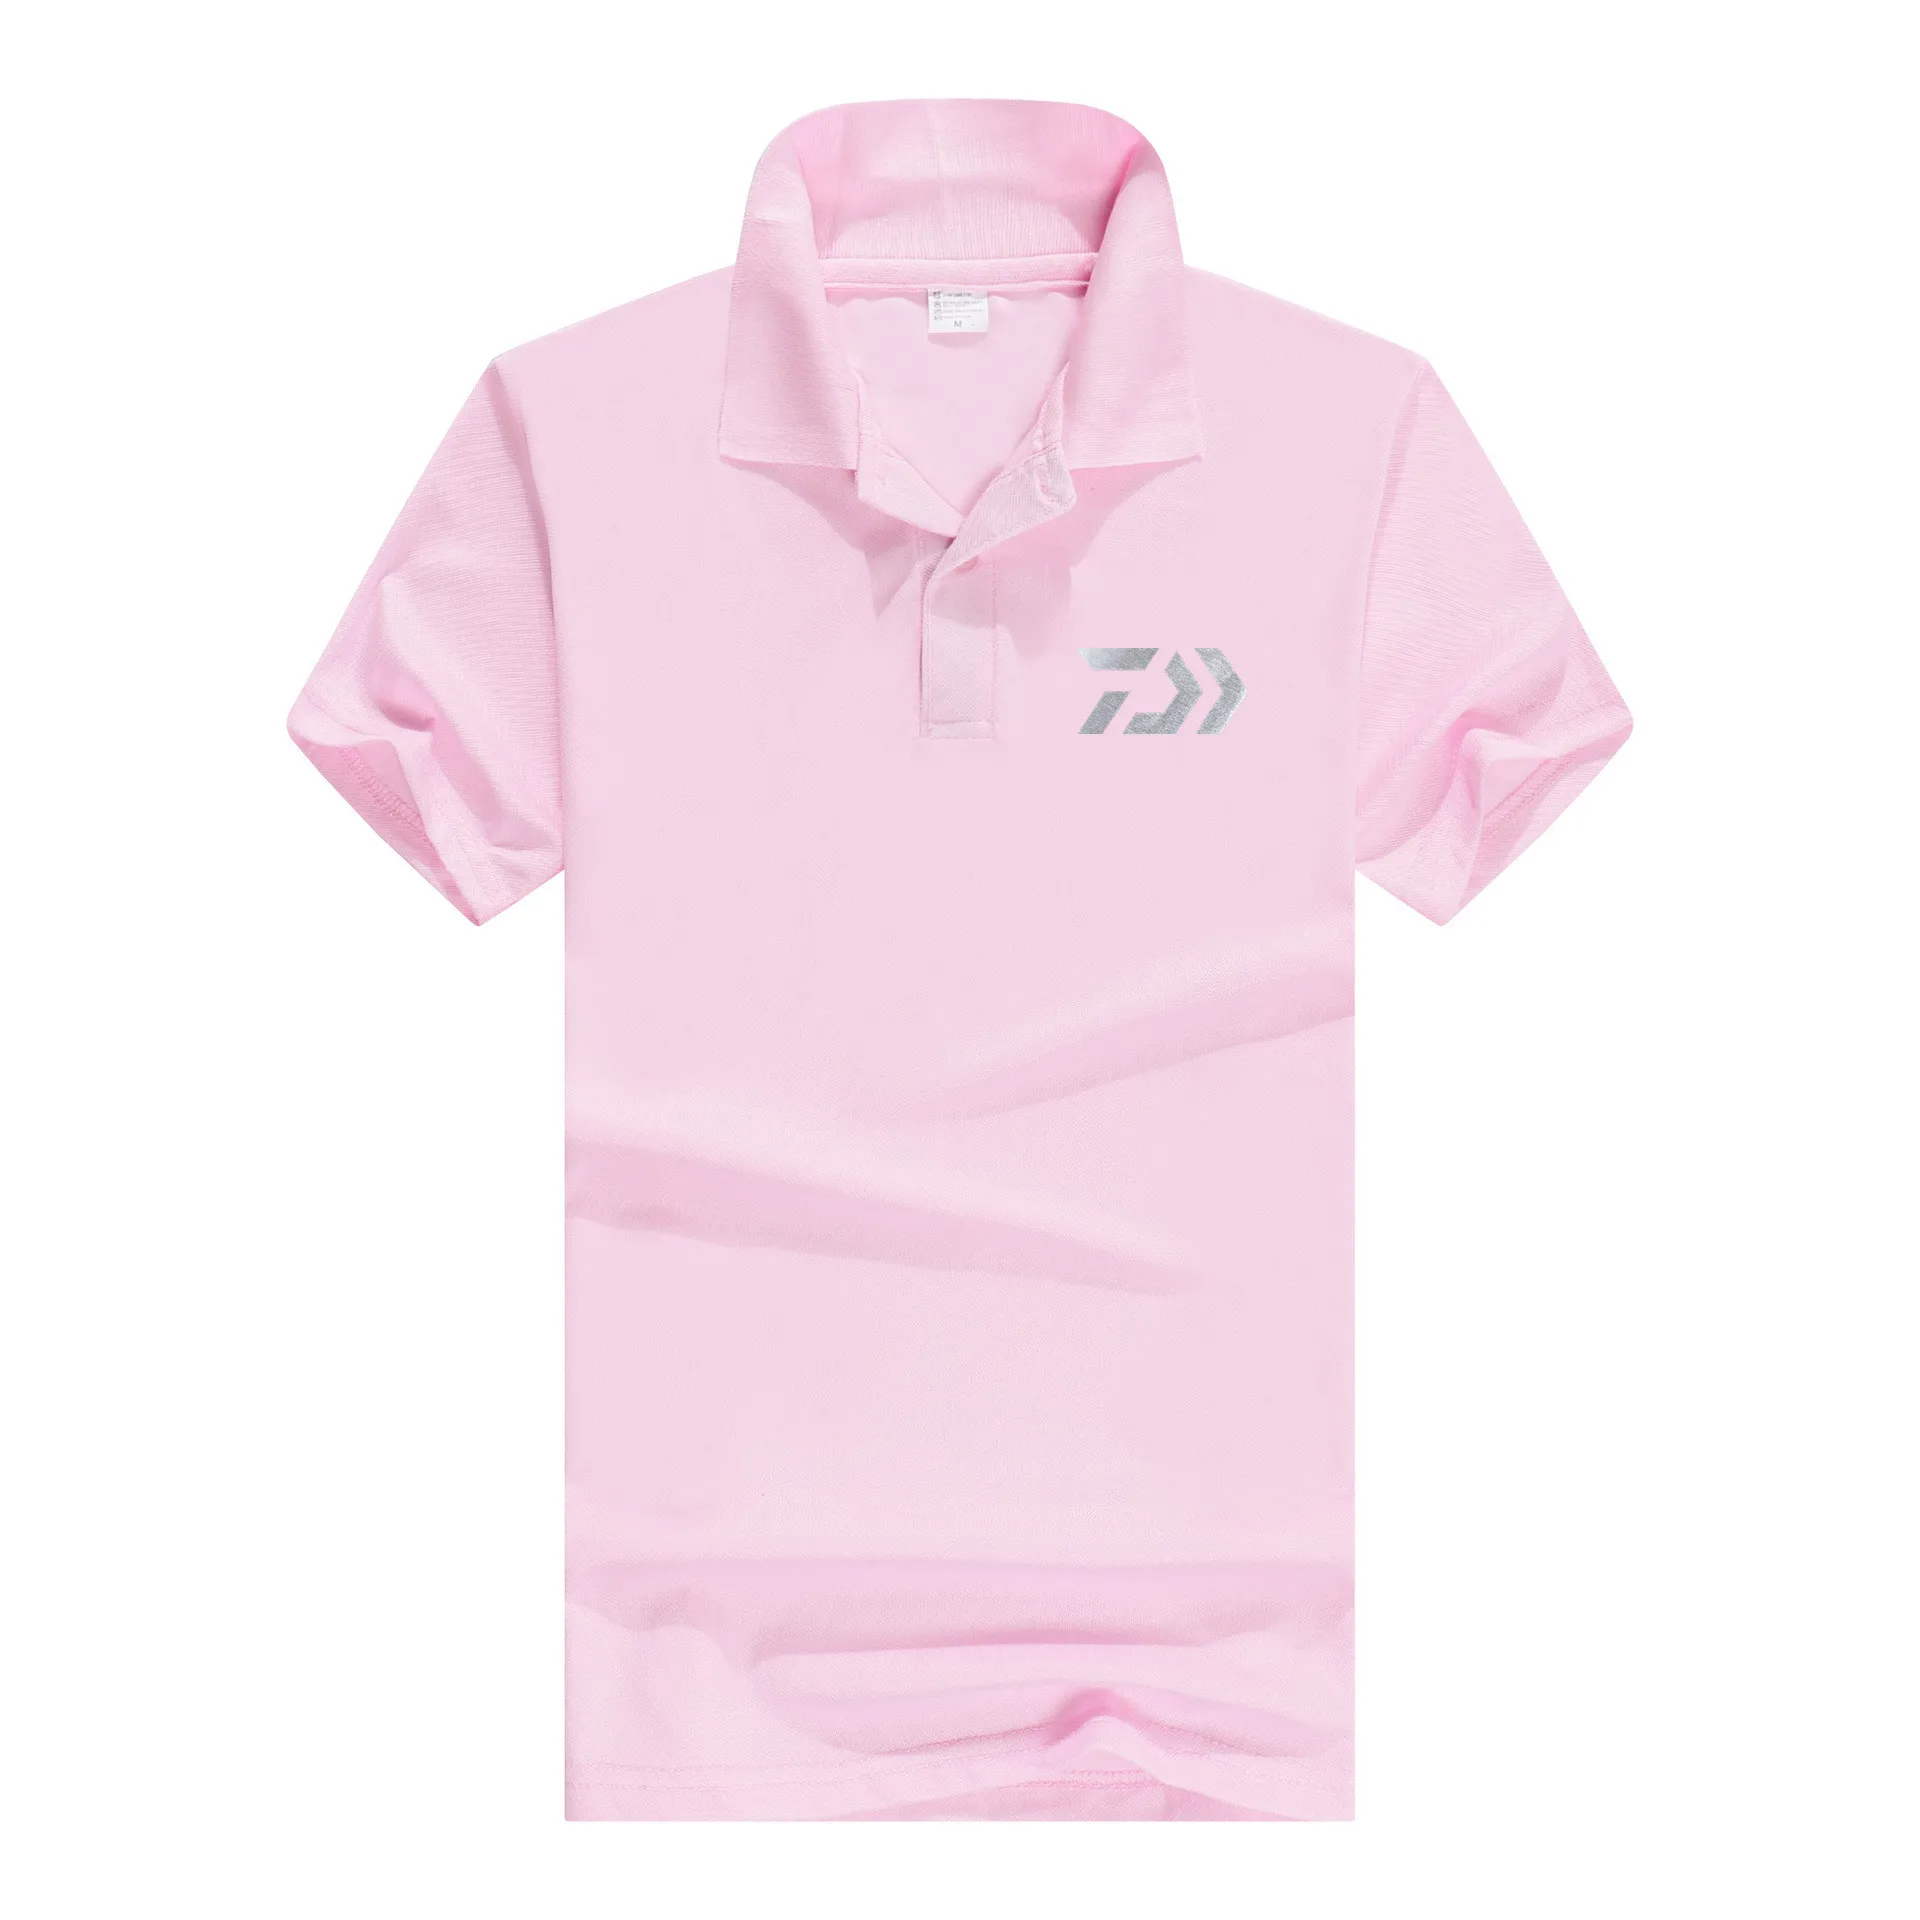 Одежда Daiwa летняя спортивная футболка-поло Футболка С рыболовным принтом Светоотражающие пропускающие воздух беговые для улицы рыболовная футболка Велоспорт мужские топы - Цвет: 2